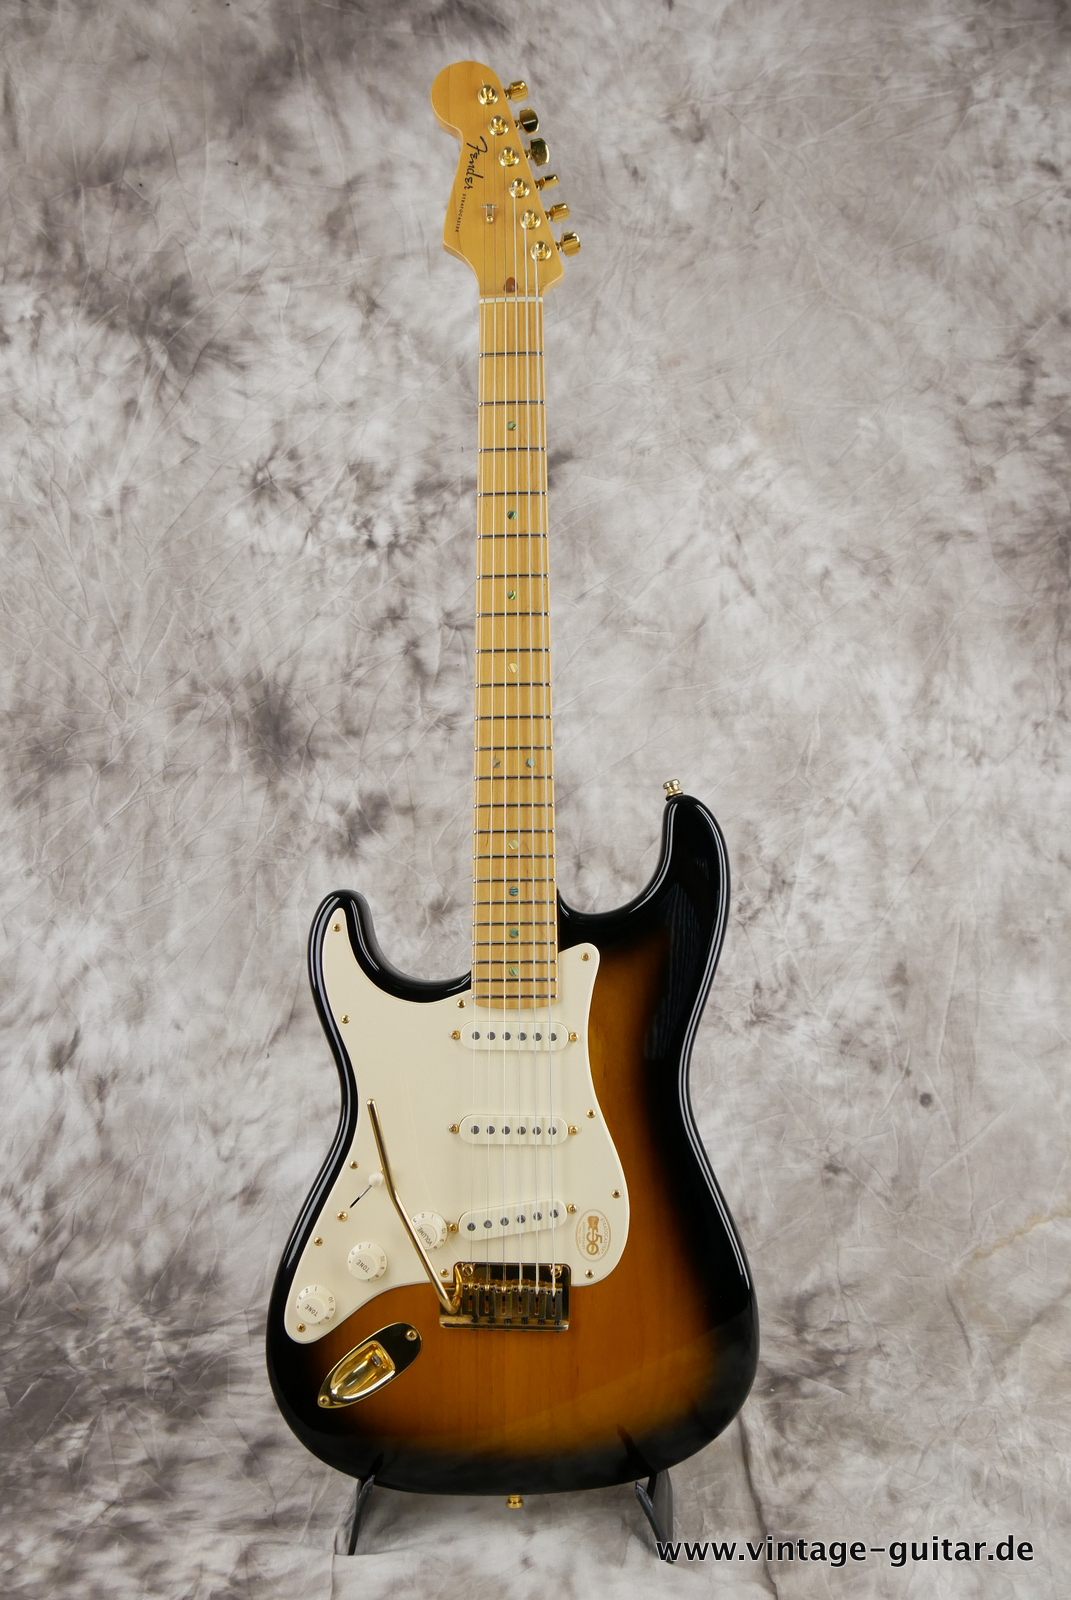 Fender_Stratocaster_deluxe_50th_anniversary__left_hand_sunburst_tweed_case_2004-001.JPG